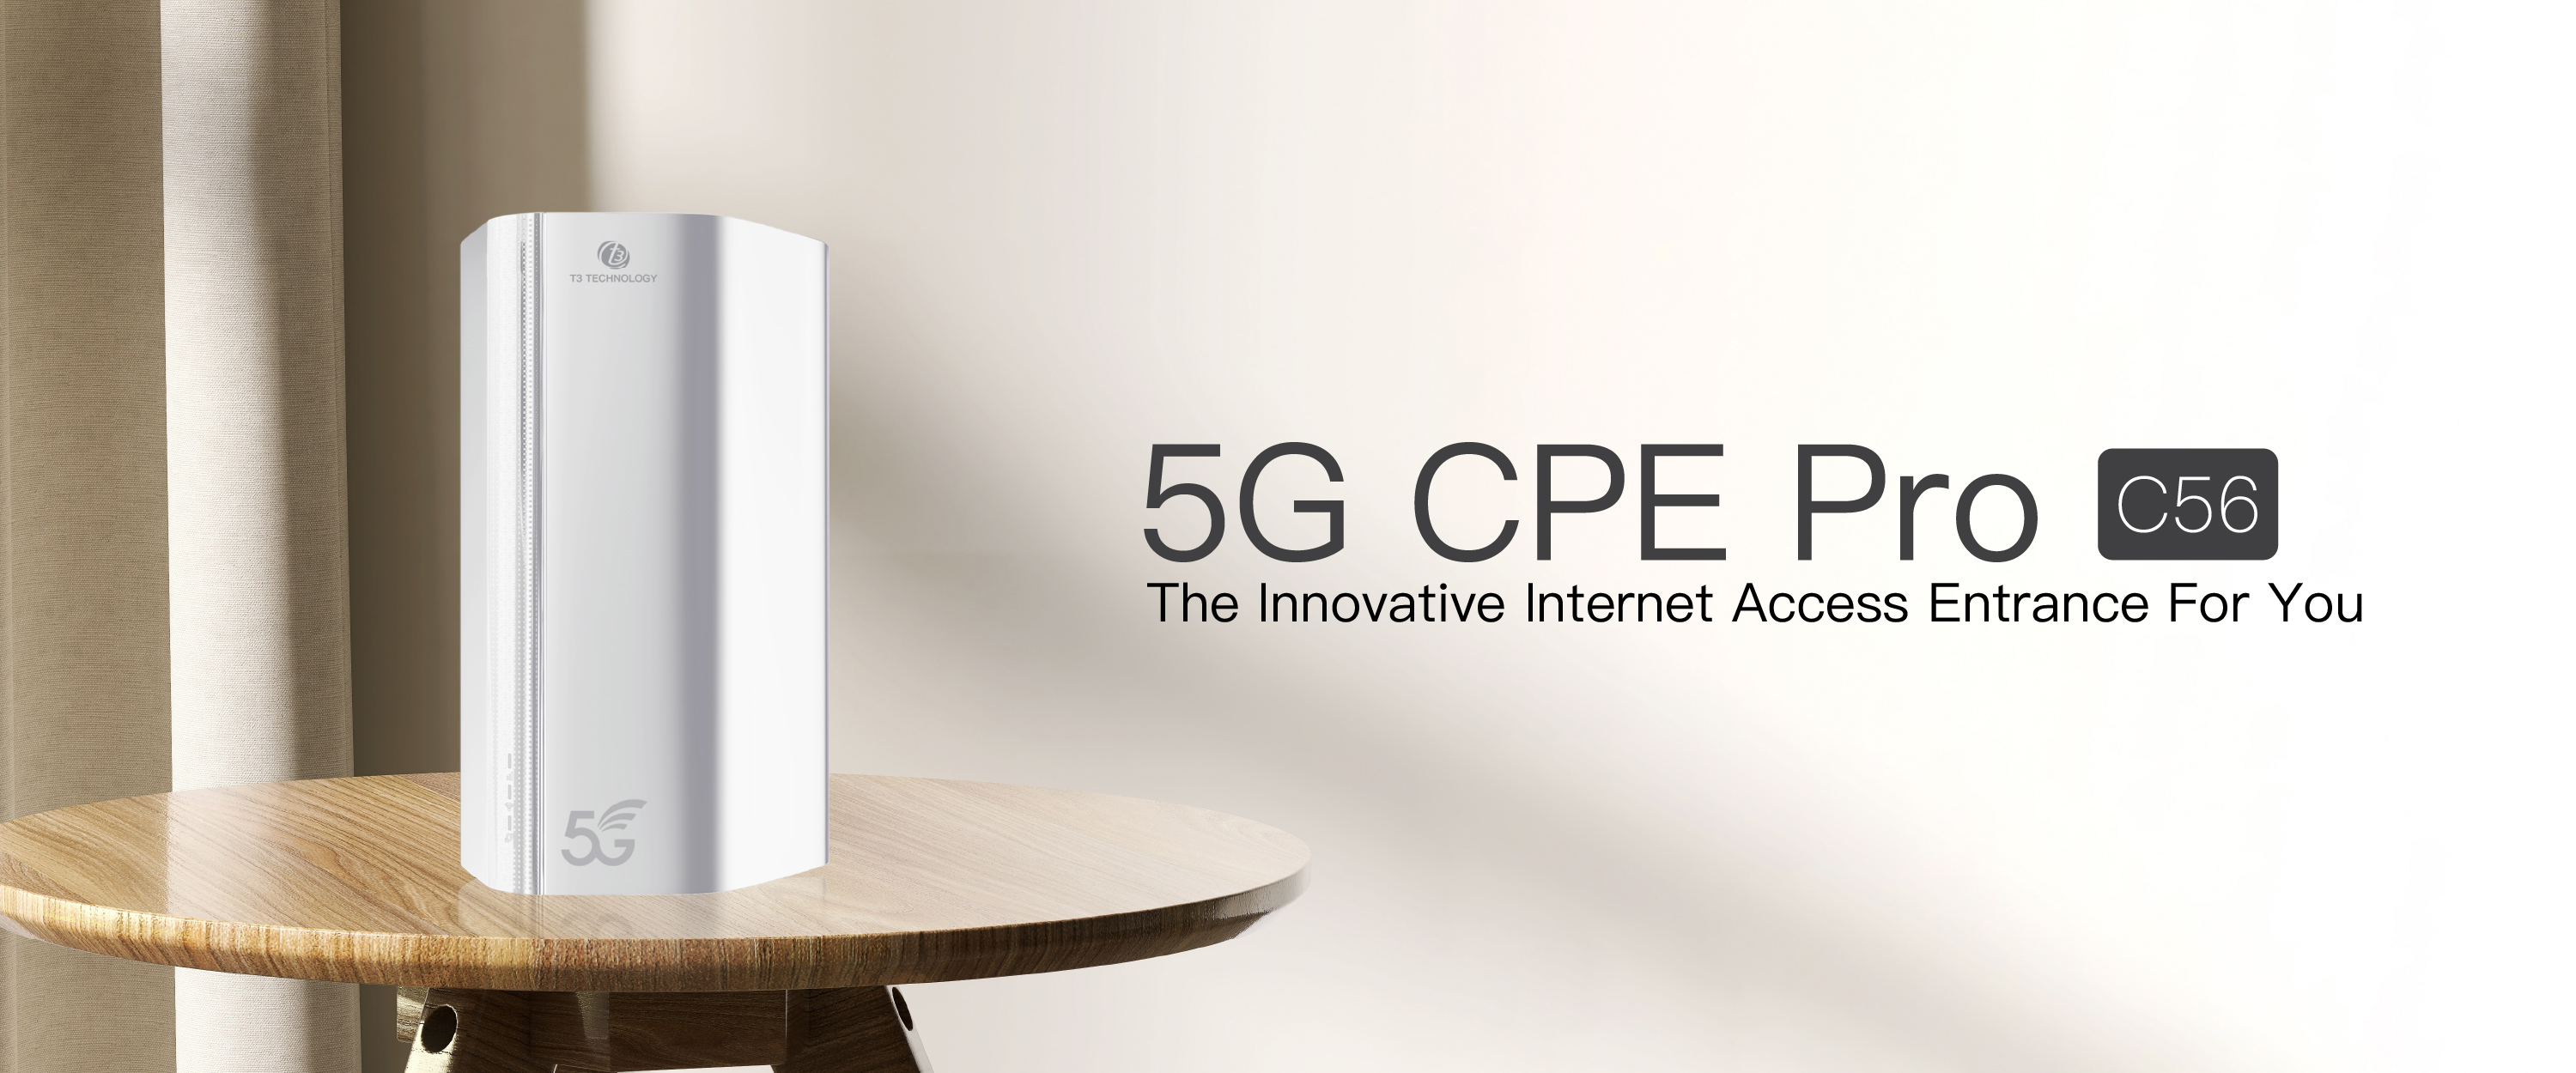 T3 Smart 5G CPE Pro C56